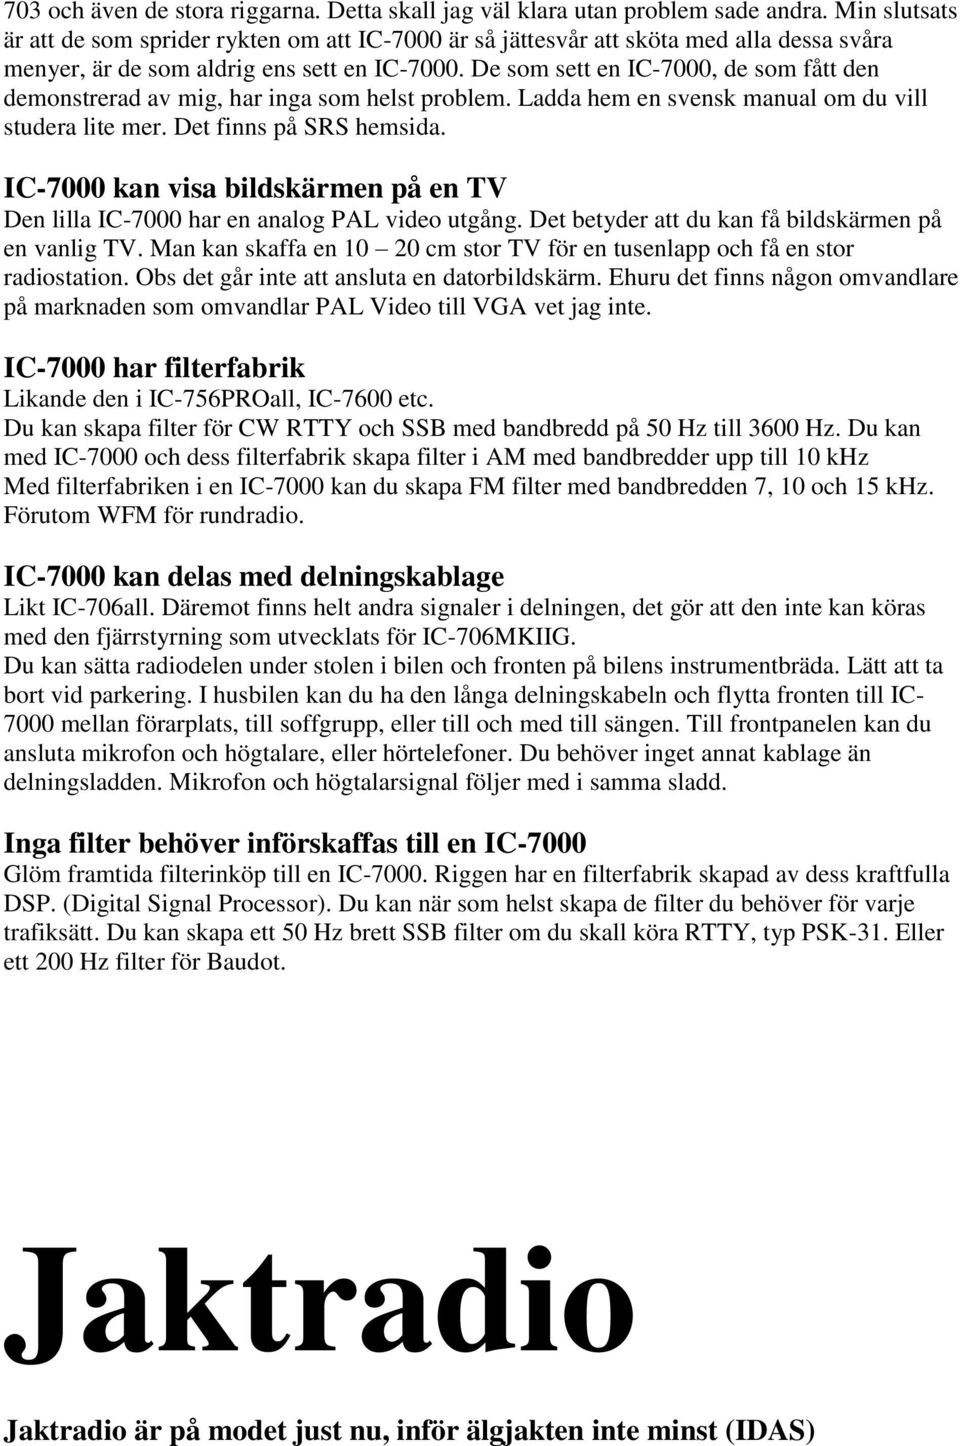 De som sett en IC-7000, de som fått den demonstrerad av mig, har inga som helst problem. Ladda hem en svensk manual om du vill studera lite mer. Det finns på SRS hemsida.